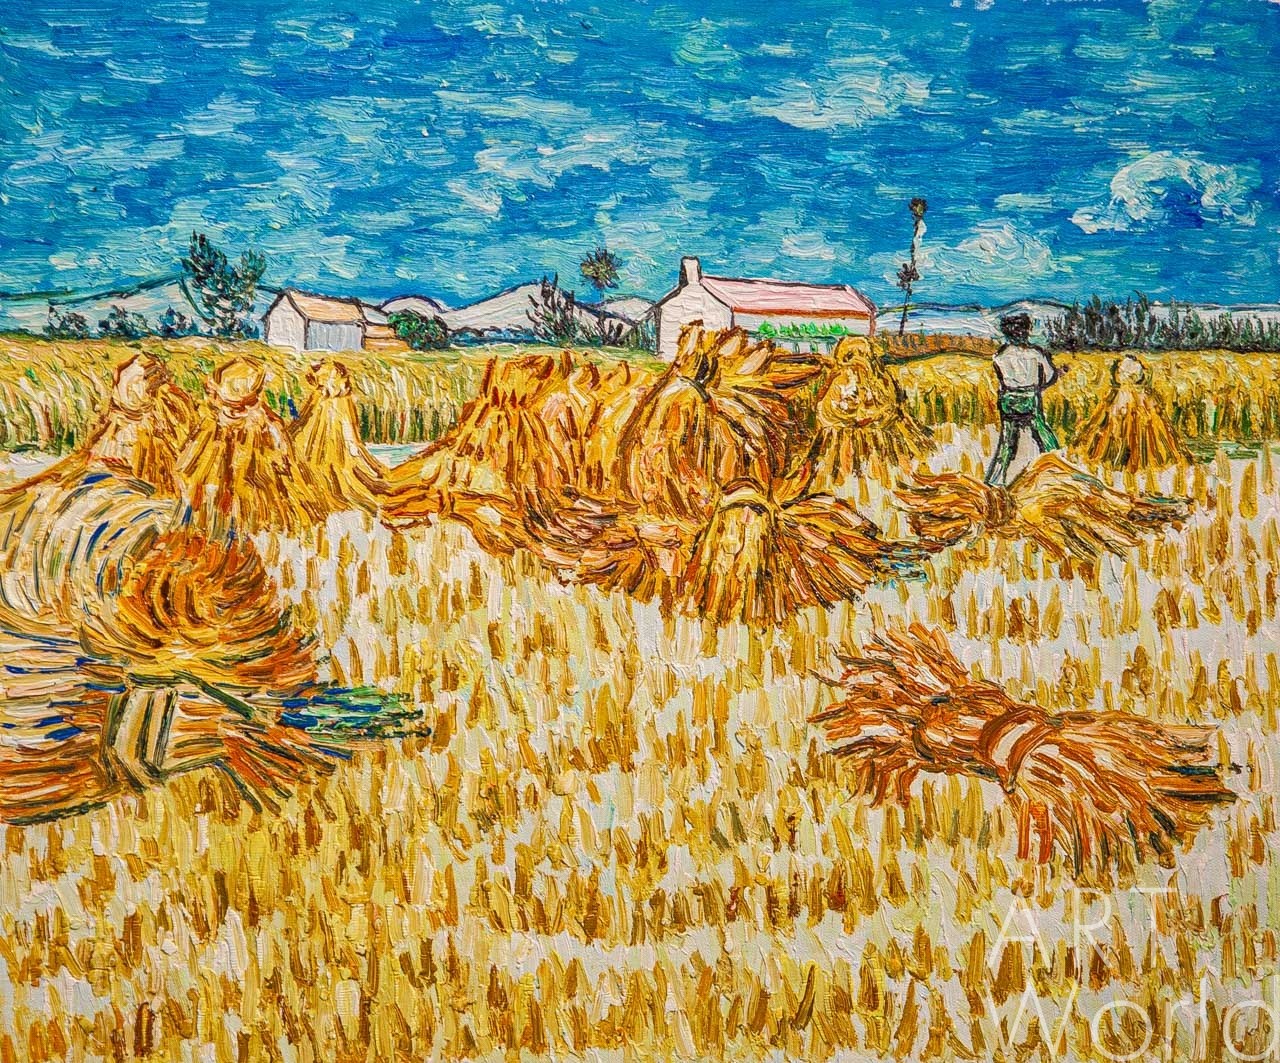 Копия картины Ван Гога "Сбор урожая в Провансе" (копия Анджея Влодарчика)  50x60 VG210804 купить в Москве